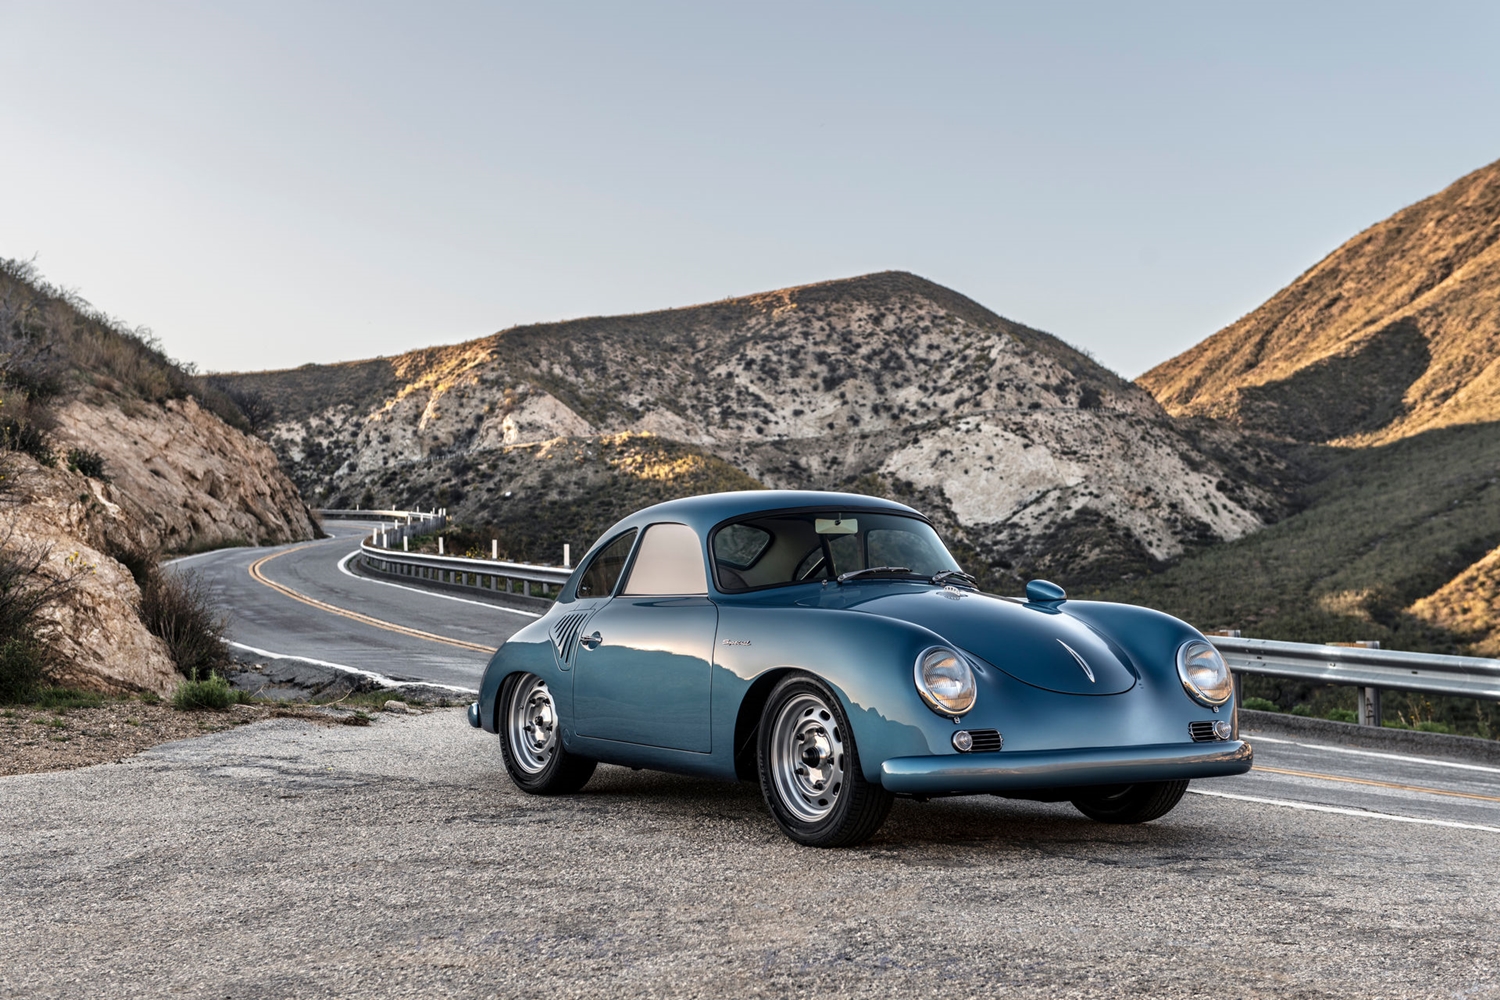 Korhű tuningnak néz ki, de ennél több van a kék 356-os Porsche mögött 5